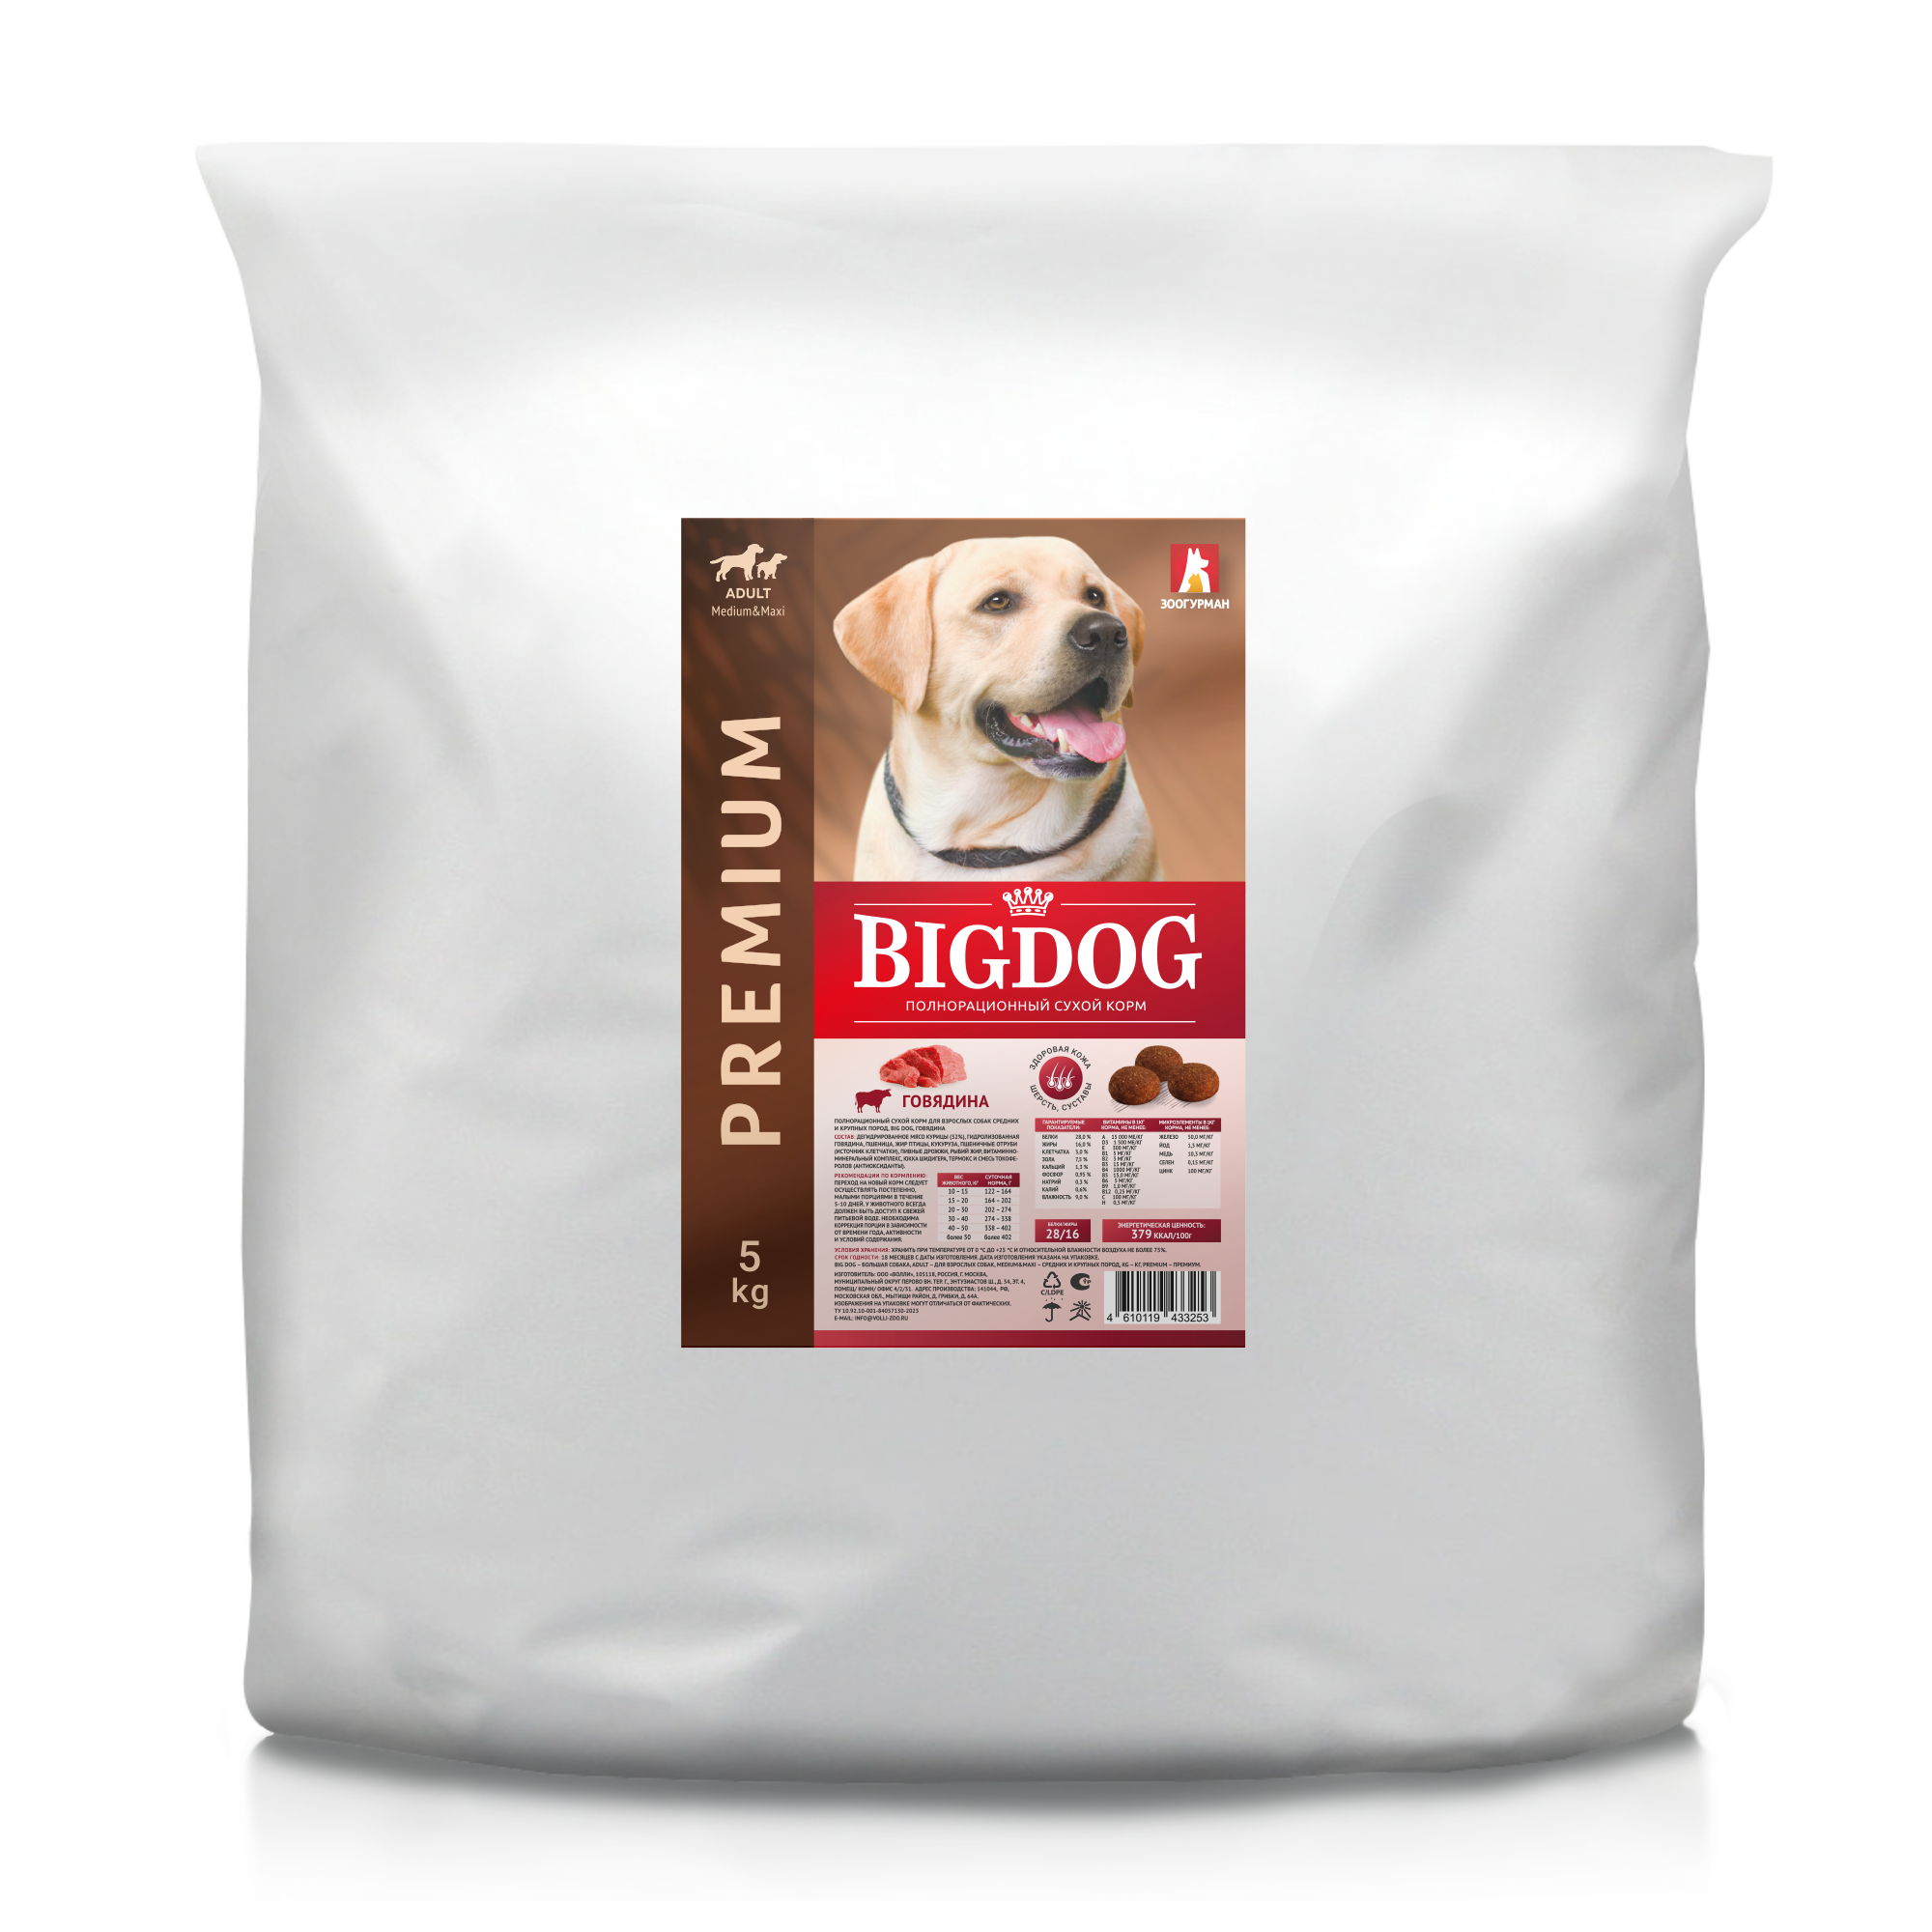 Zoogurman BIG DOG сухой корм для собак средних и крупных пород с говядиной 5кг фото, цены, купить